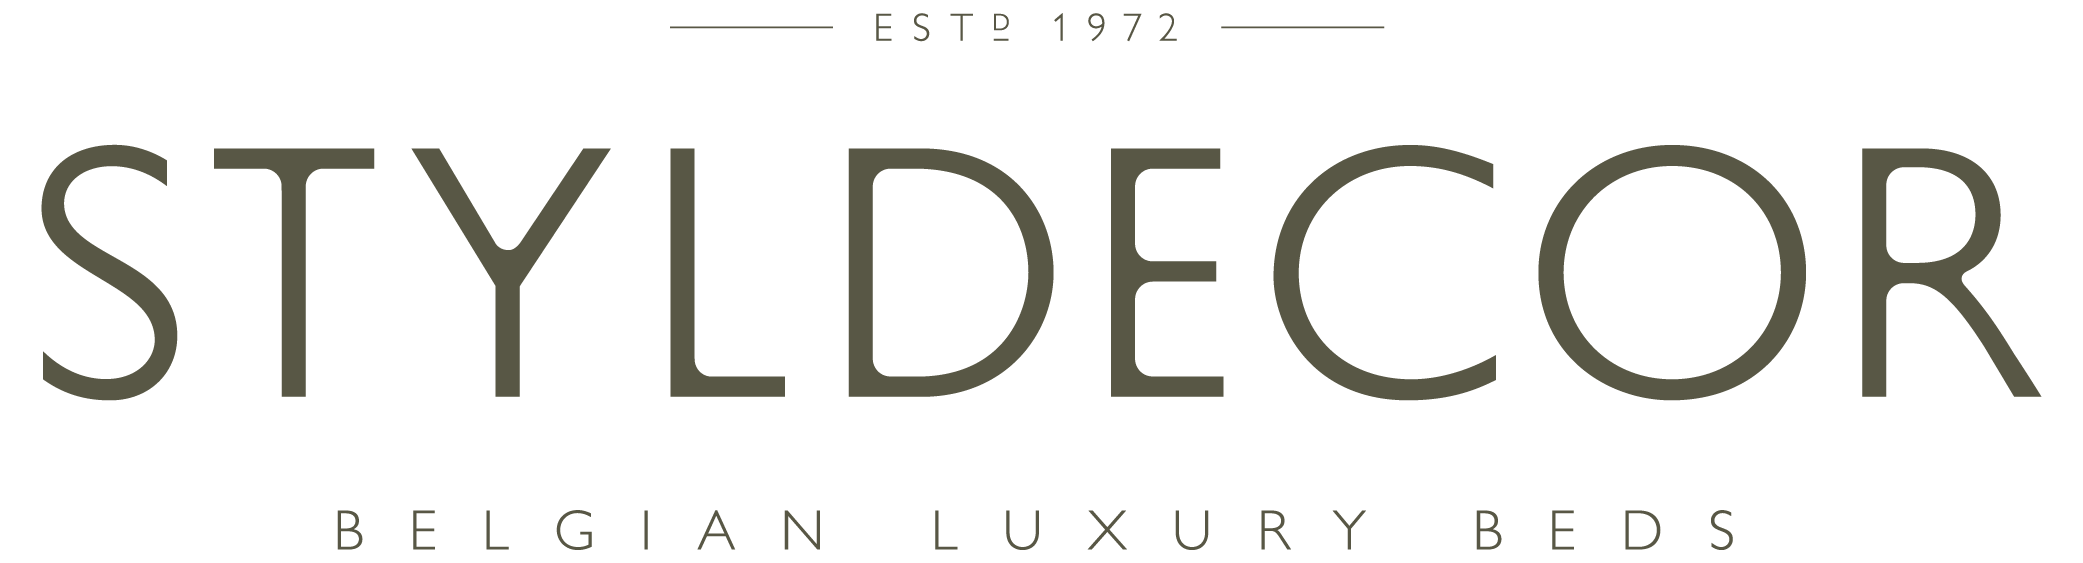 logo STYLDECOR